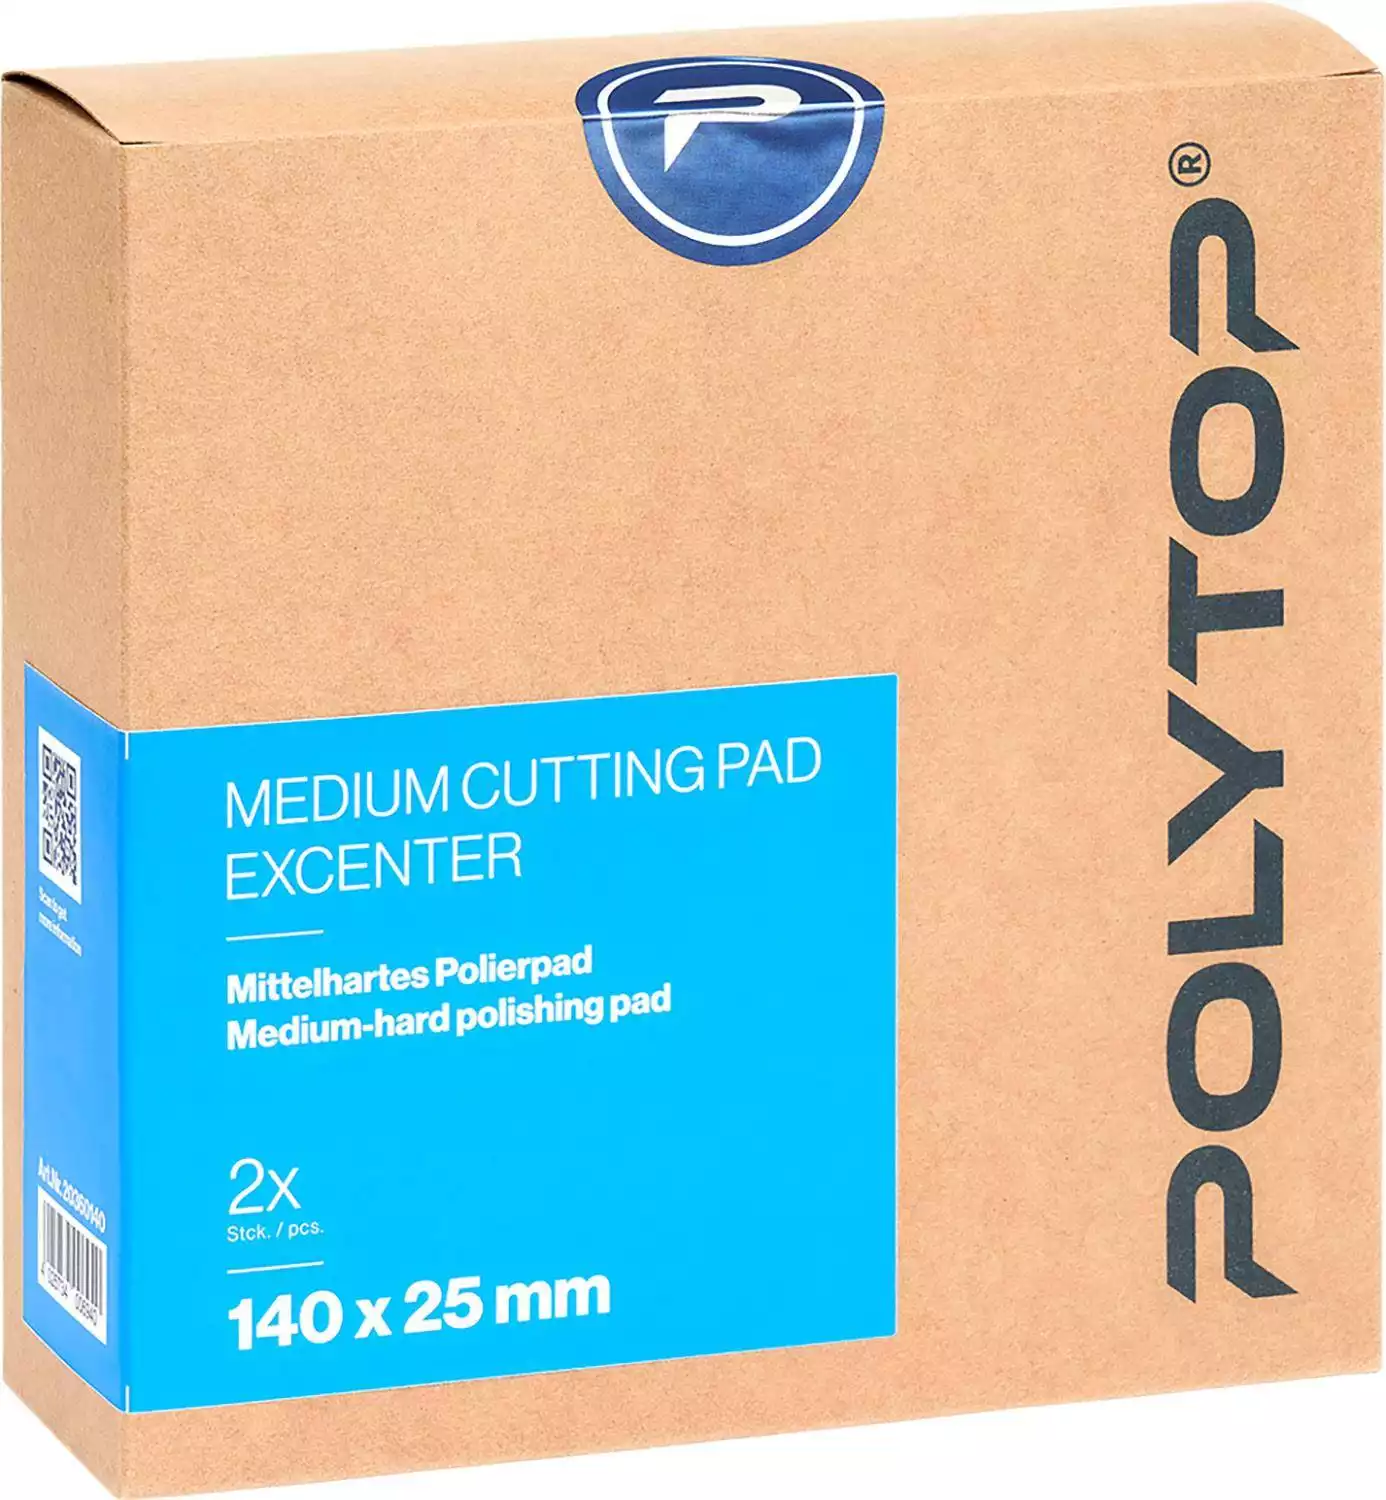 Medium Cutting Pad blau Excenter 140 x 25 mm, 2er Pack